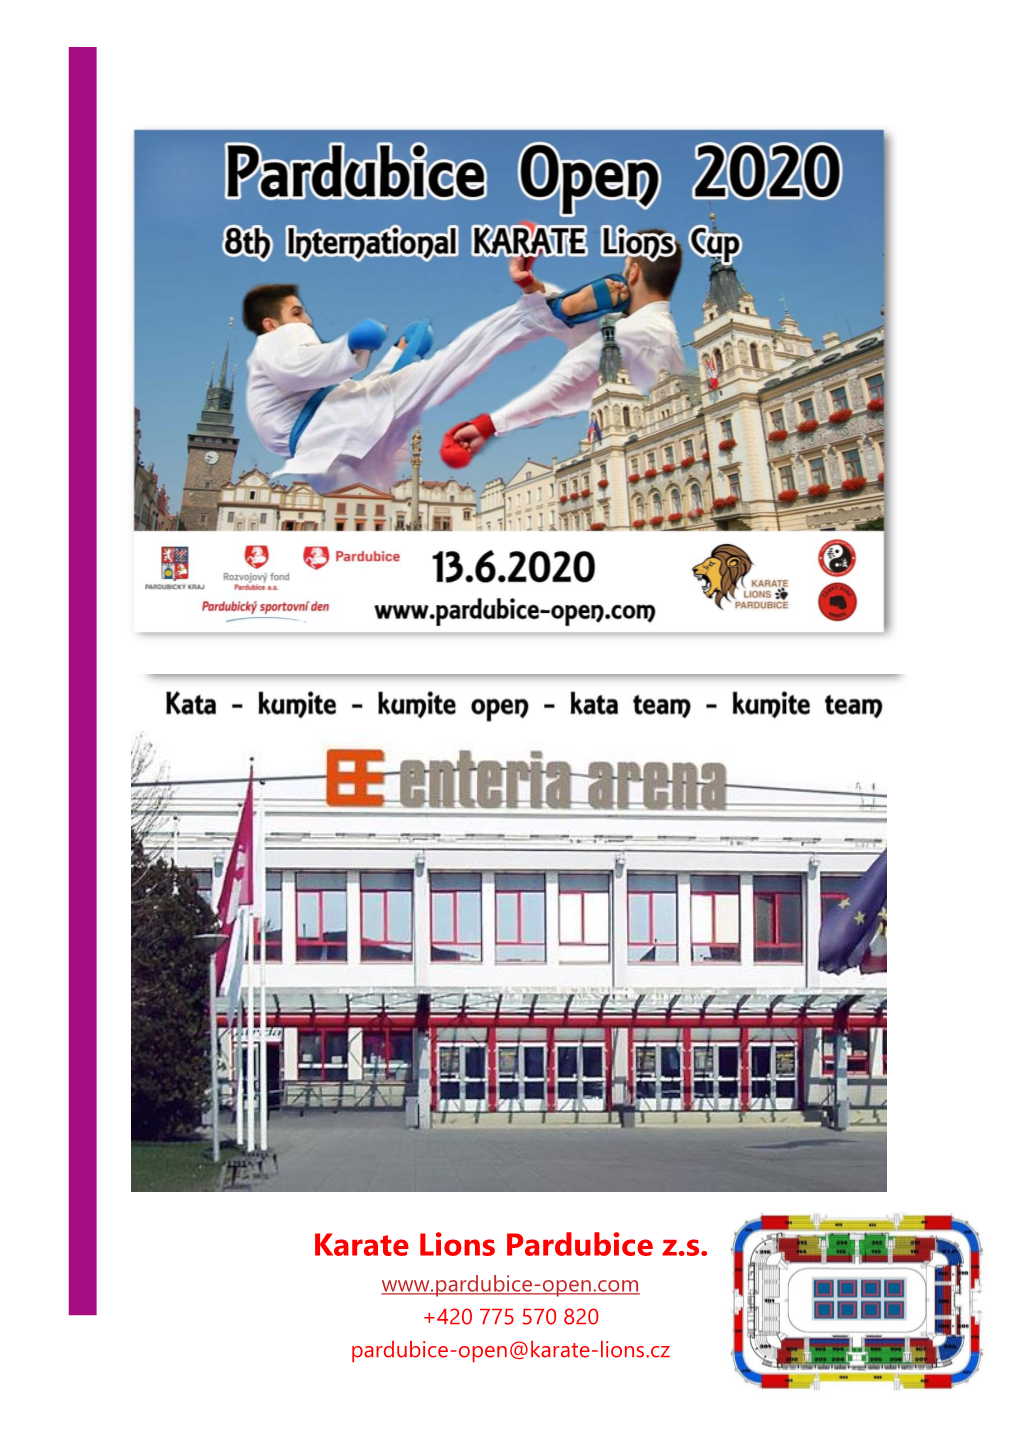 PARDUBICE OPEN 2020 8Th International Karate Lions Cup 13-14Th June 2020 Pardubice, Czech Republic